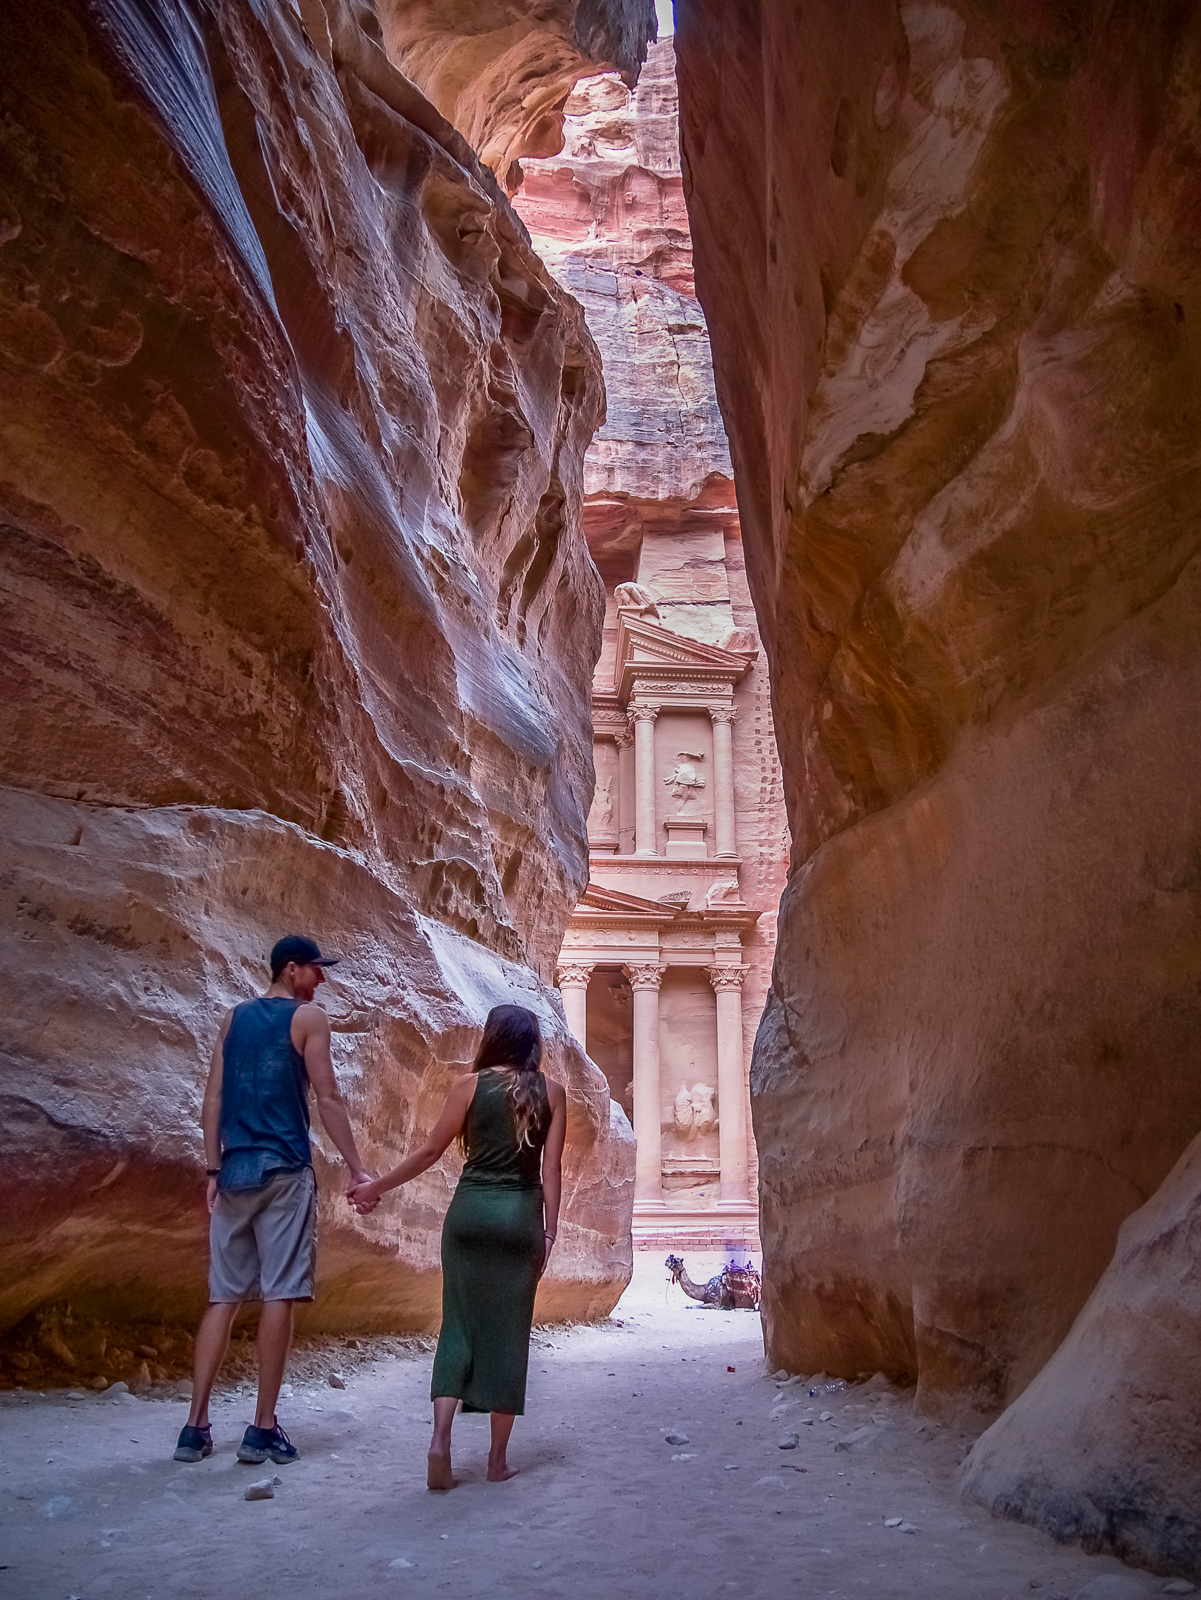 Siq entrance to Petra